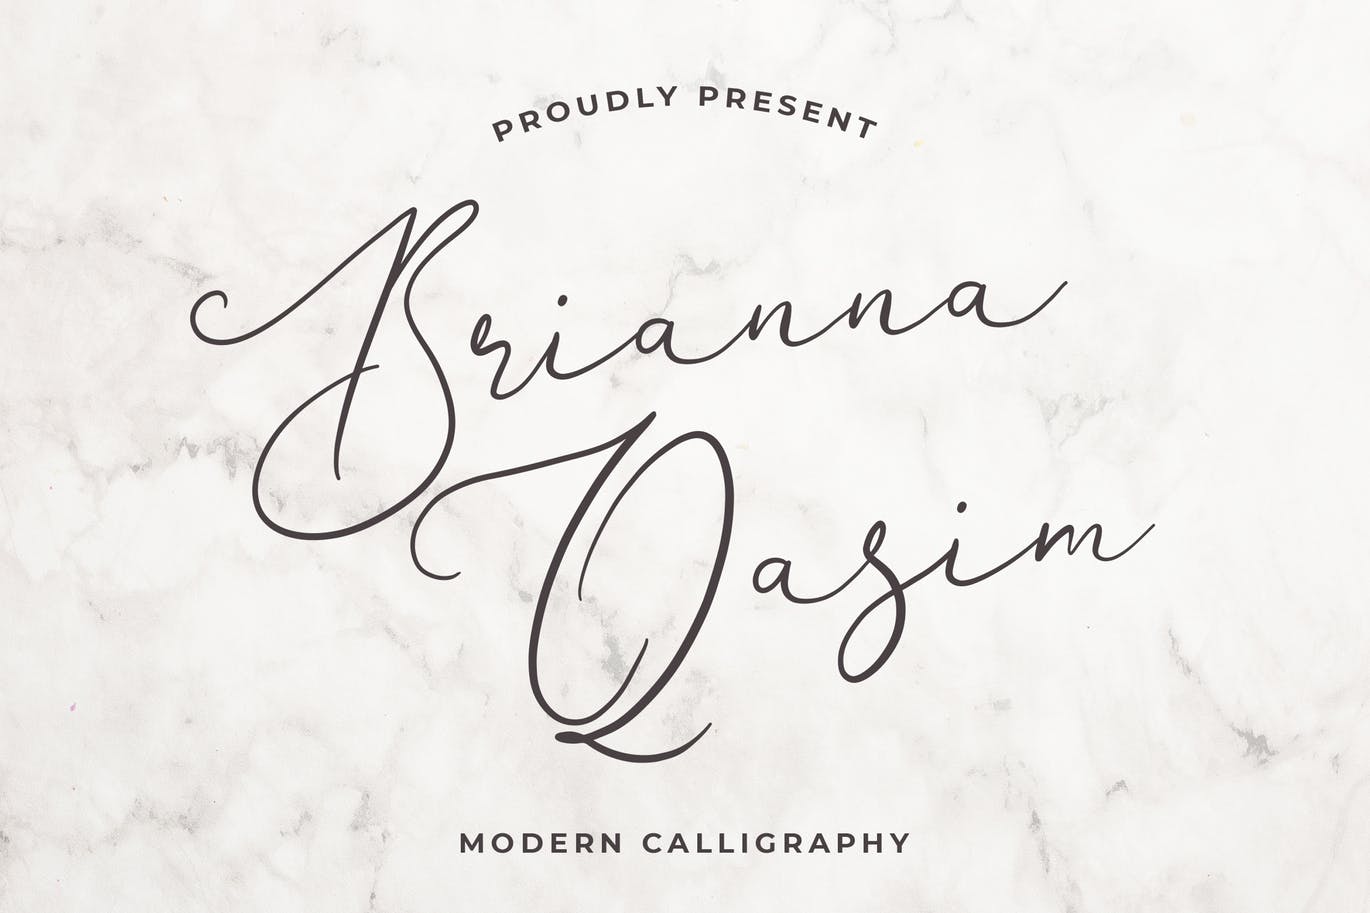 独特手写连笔书法英文字体亿图网易图库精选 Brianna Qasim Beautiful Calligraphy Font插图